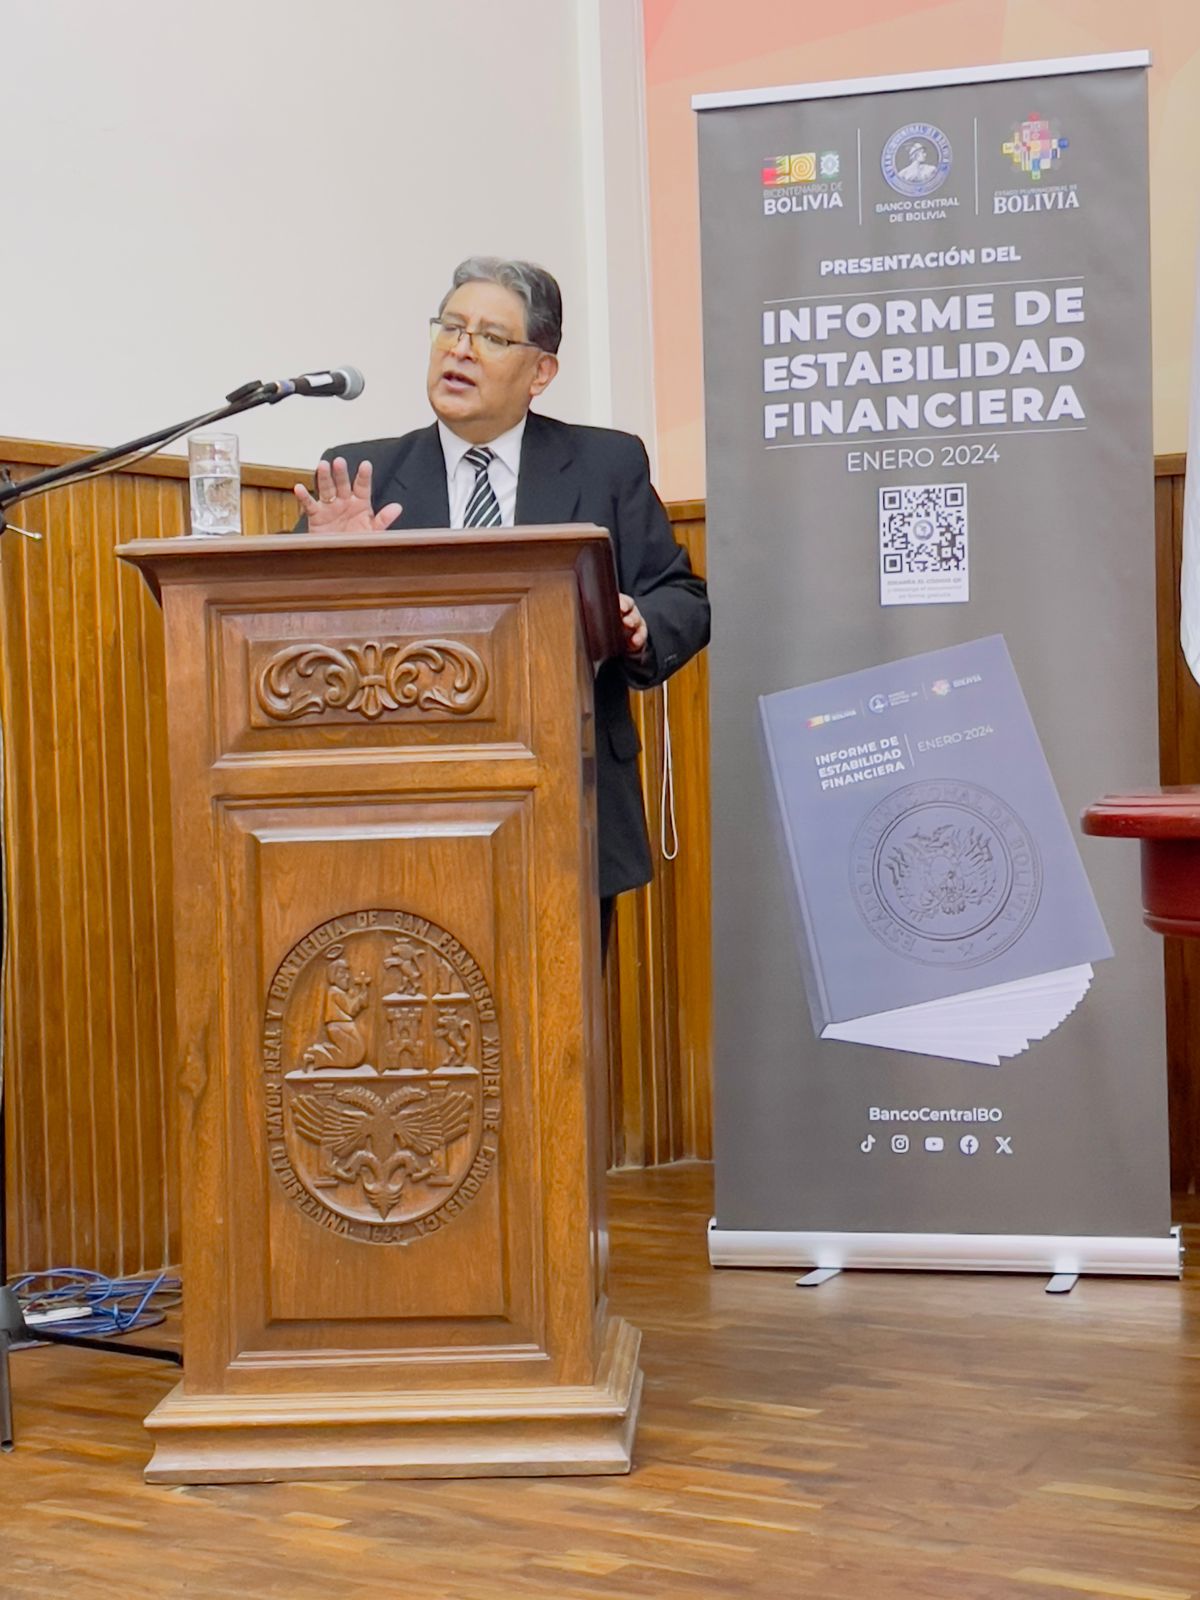 El Banco Central de Bolivia presenta el informe de estabilidad financiera – enero 2024